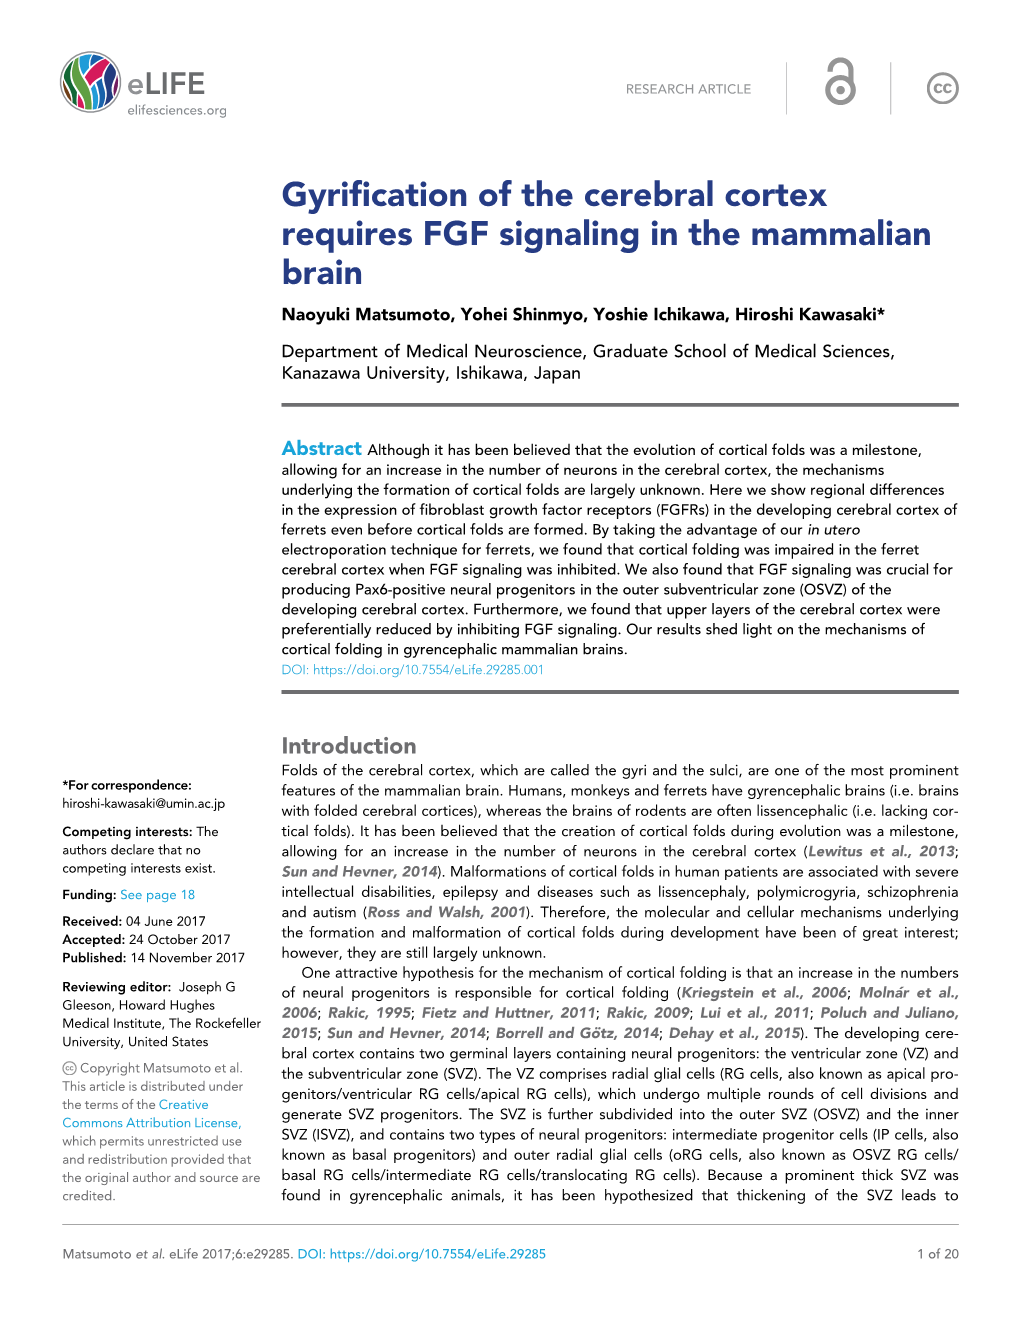 Gyrification of the Cerebral Cortex Requires FGF Signaling in the Mammalian Brain Naoyuki Matsumoto, Yohei Shinmyo, Yoshie Ichikawa, Hiroshi Kawasaki*